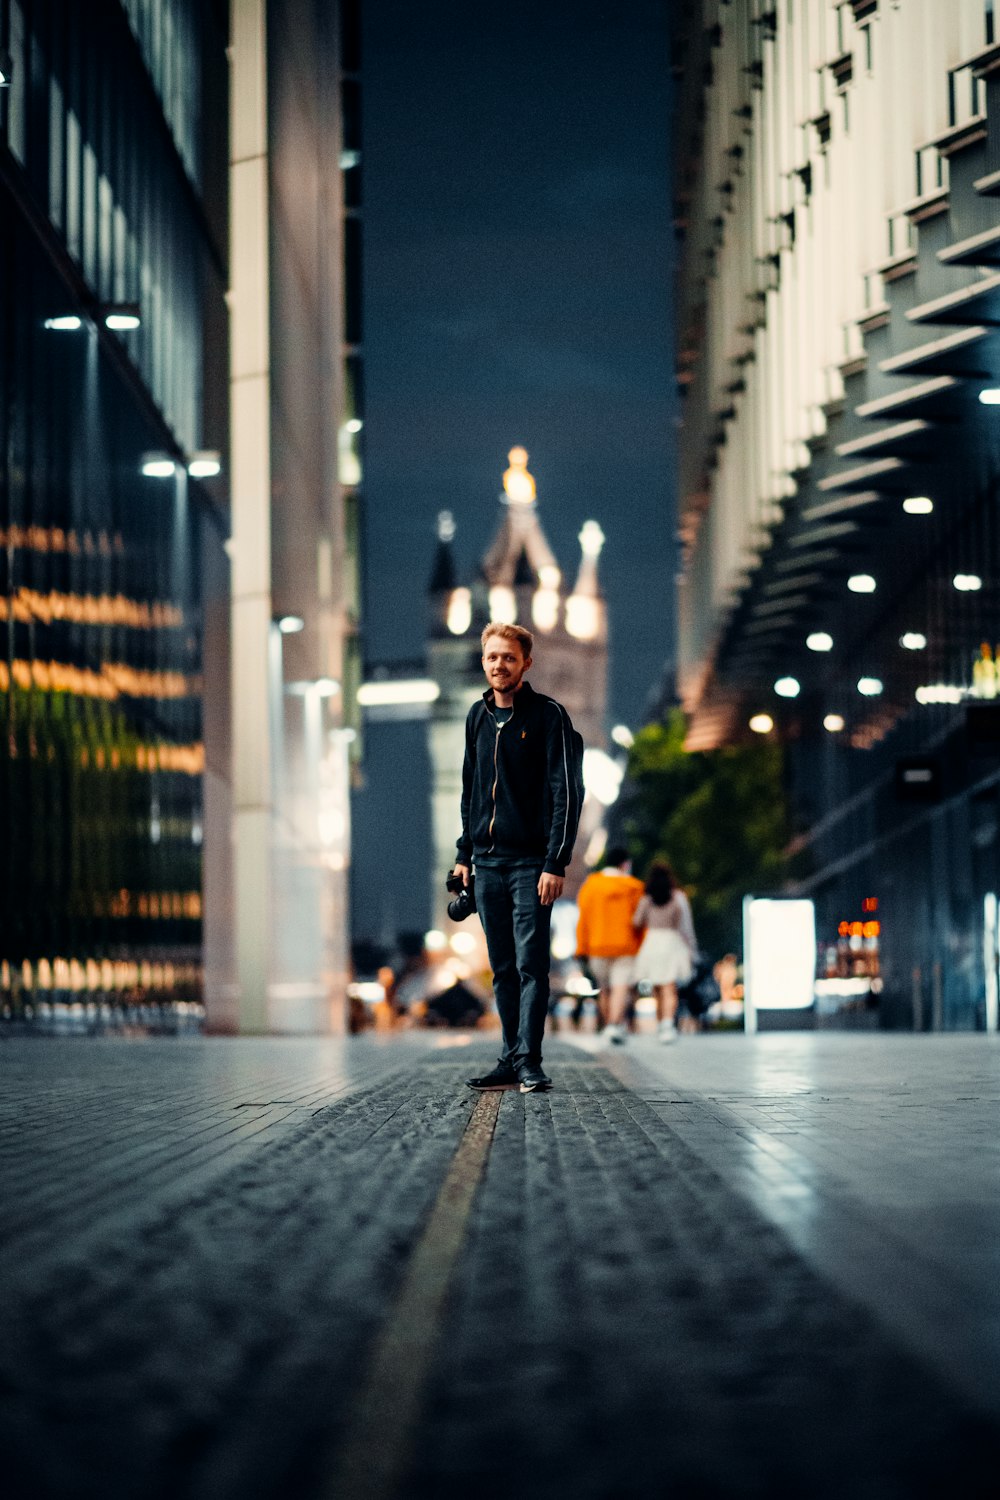 Mann in schwarzer Jacke und schwarzer Hose, der nachts auf dem Bürgersteig steht